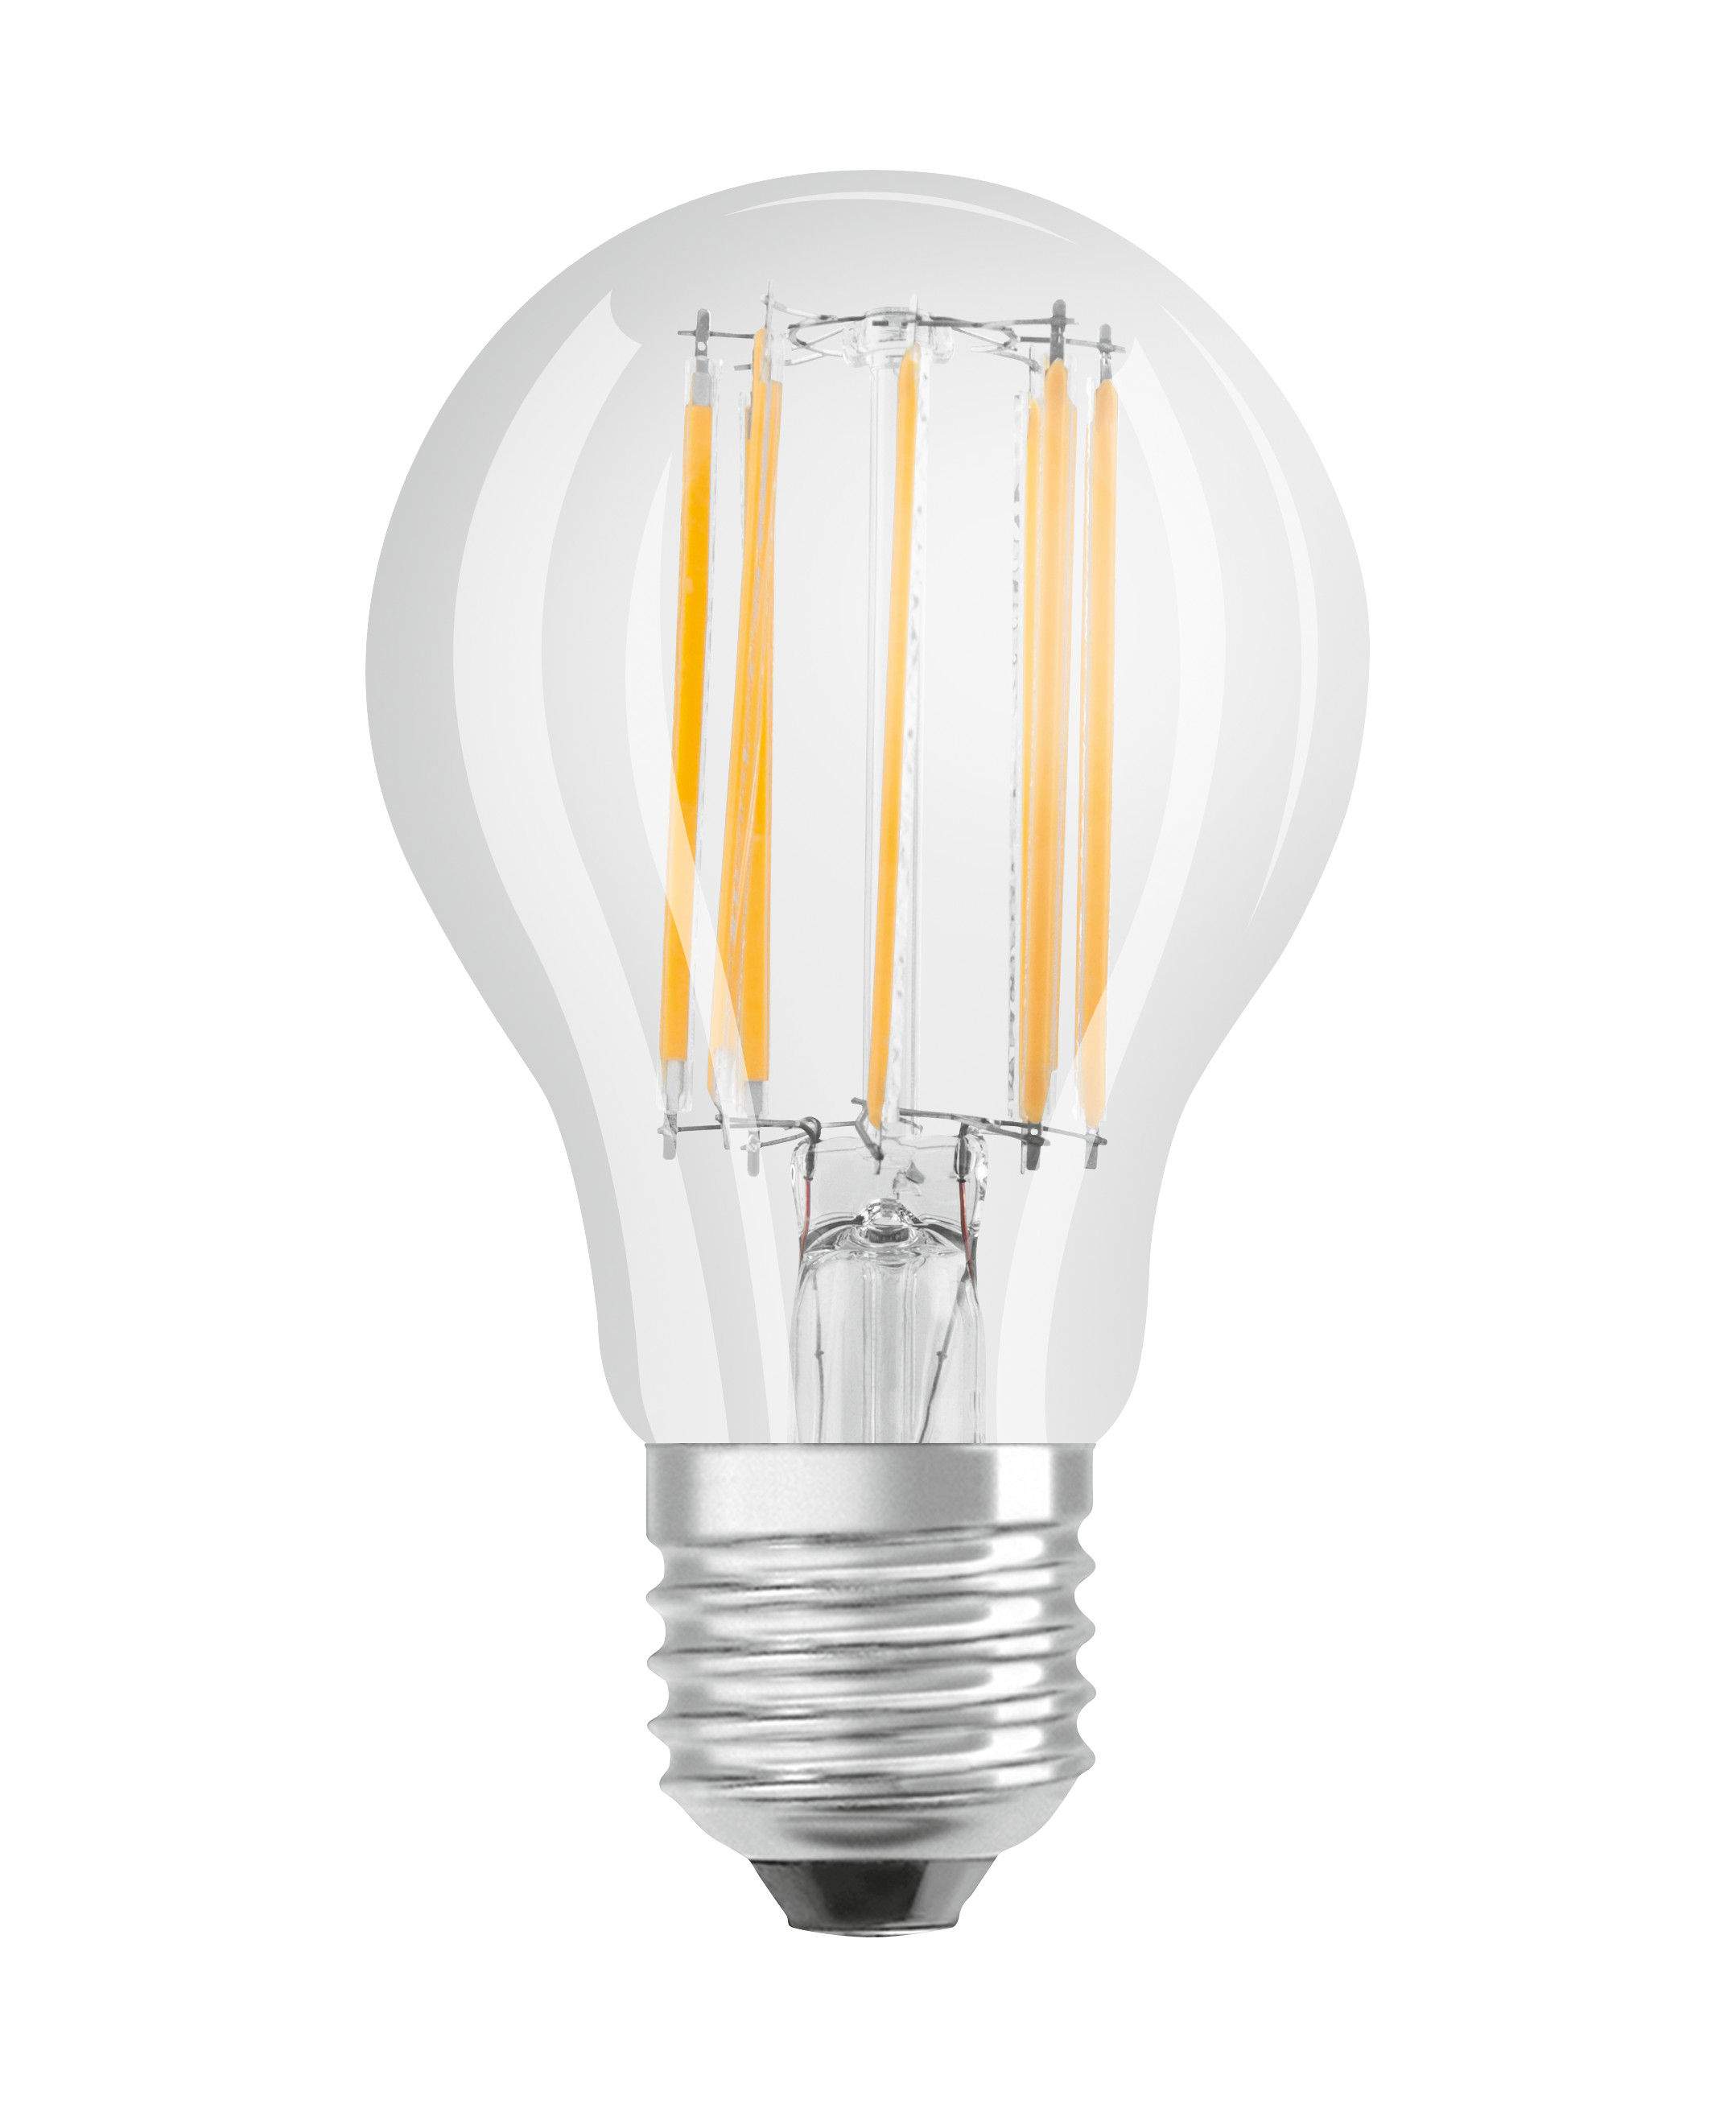 E27 standard clear glass LED bulb, 4W, cool white.